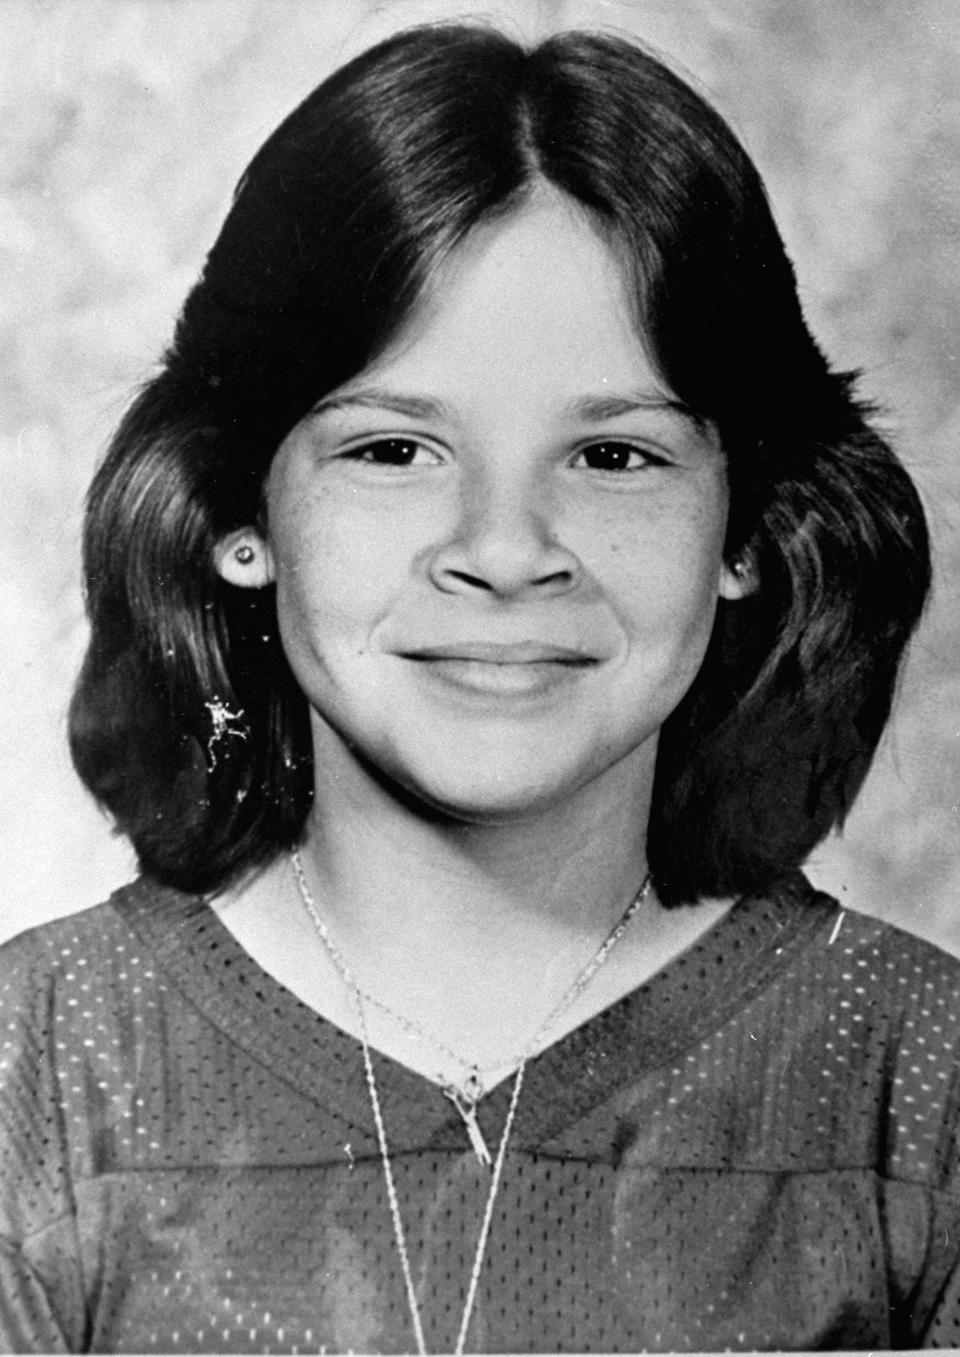 Kimberly Diane Leach, 12, on February 9, 1978